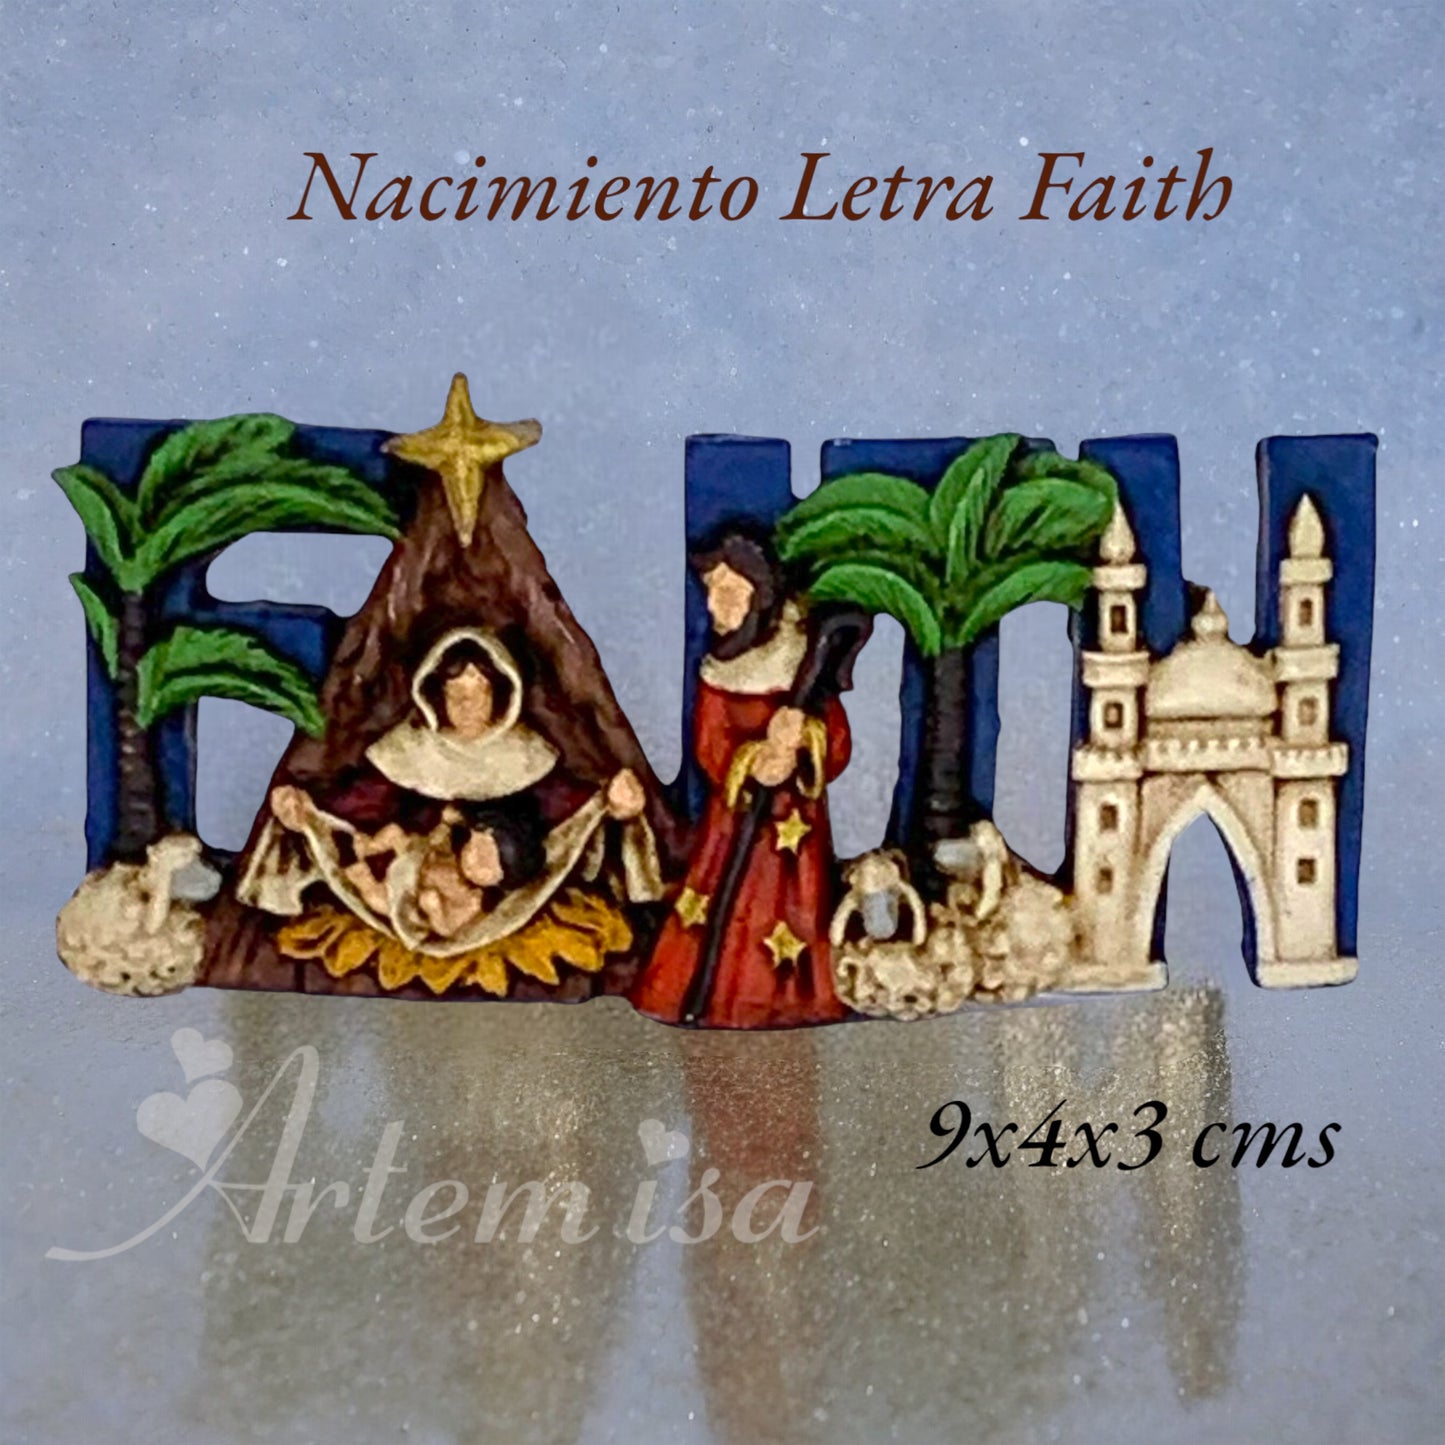 Nacim Letra Faith